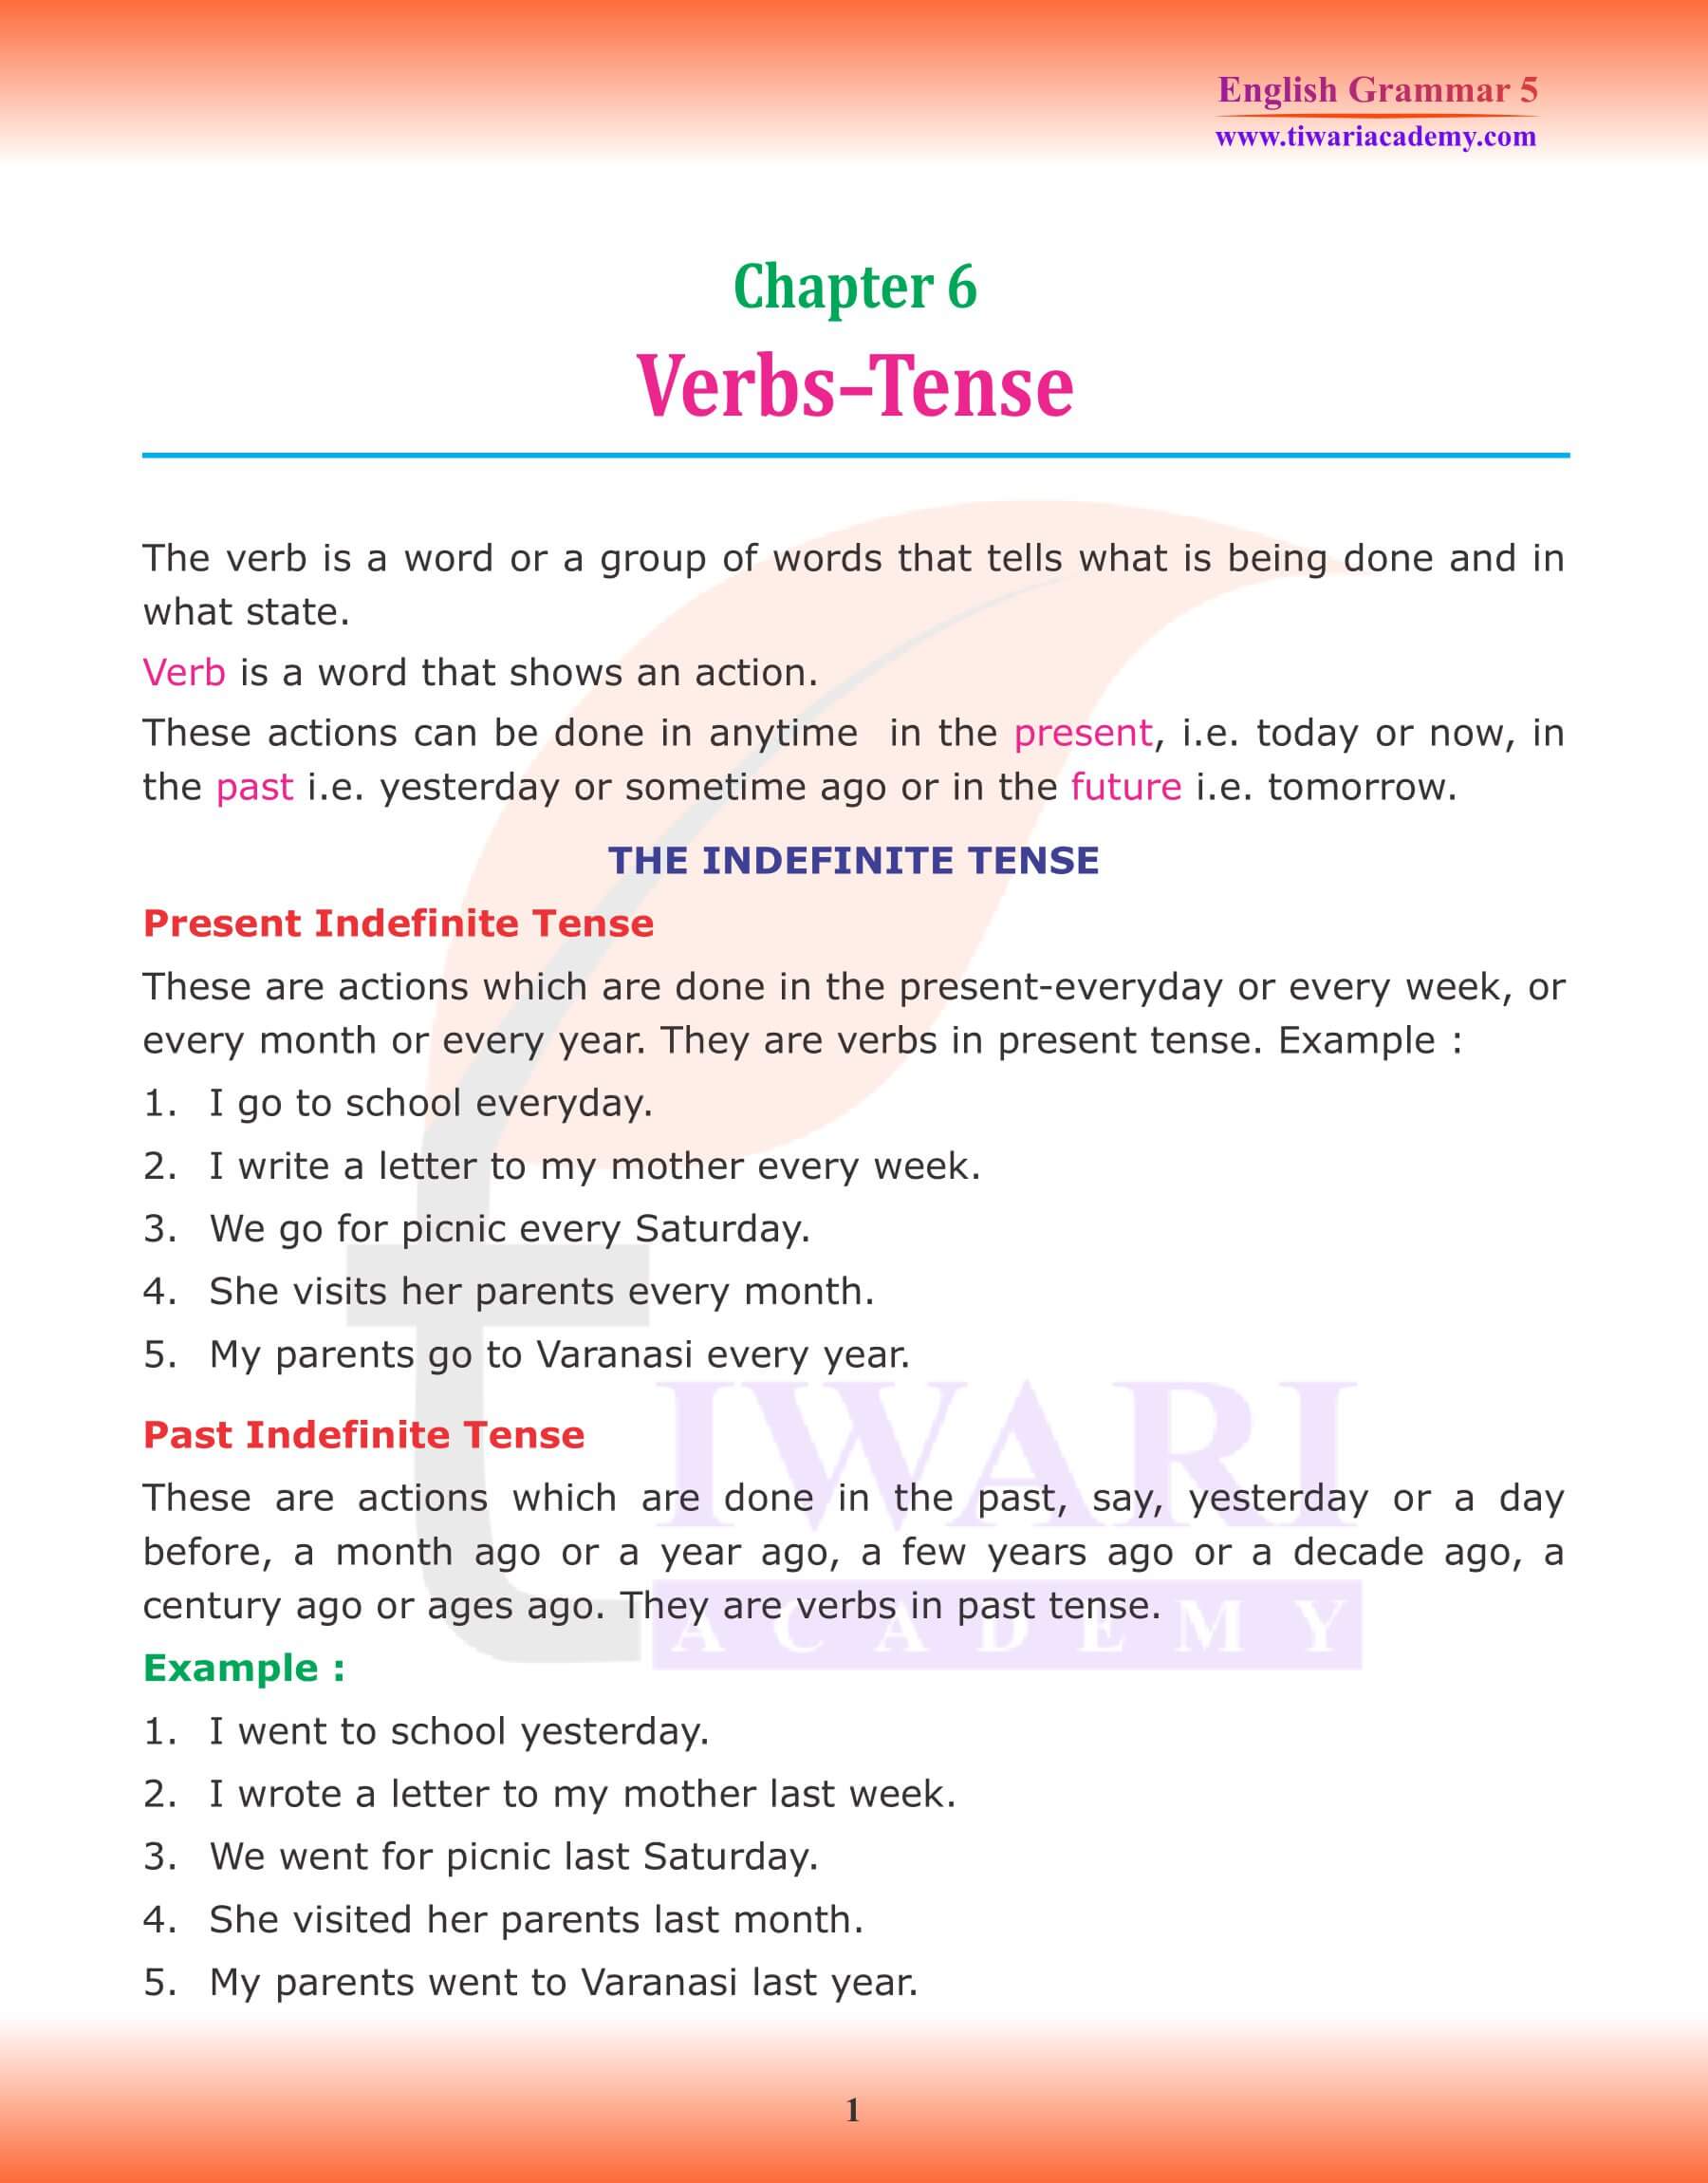 Class 5 Grammar Chapter 6 Verb and Tense